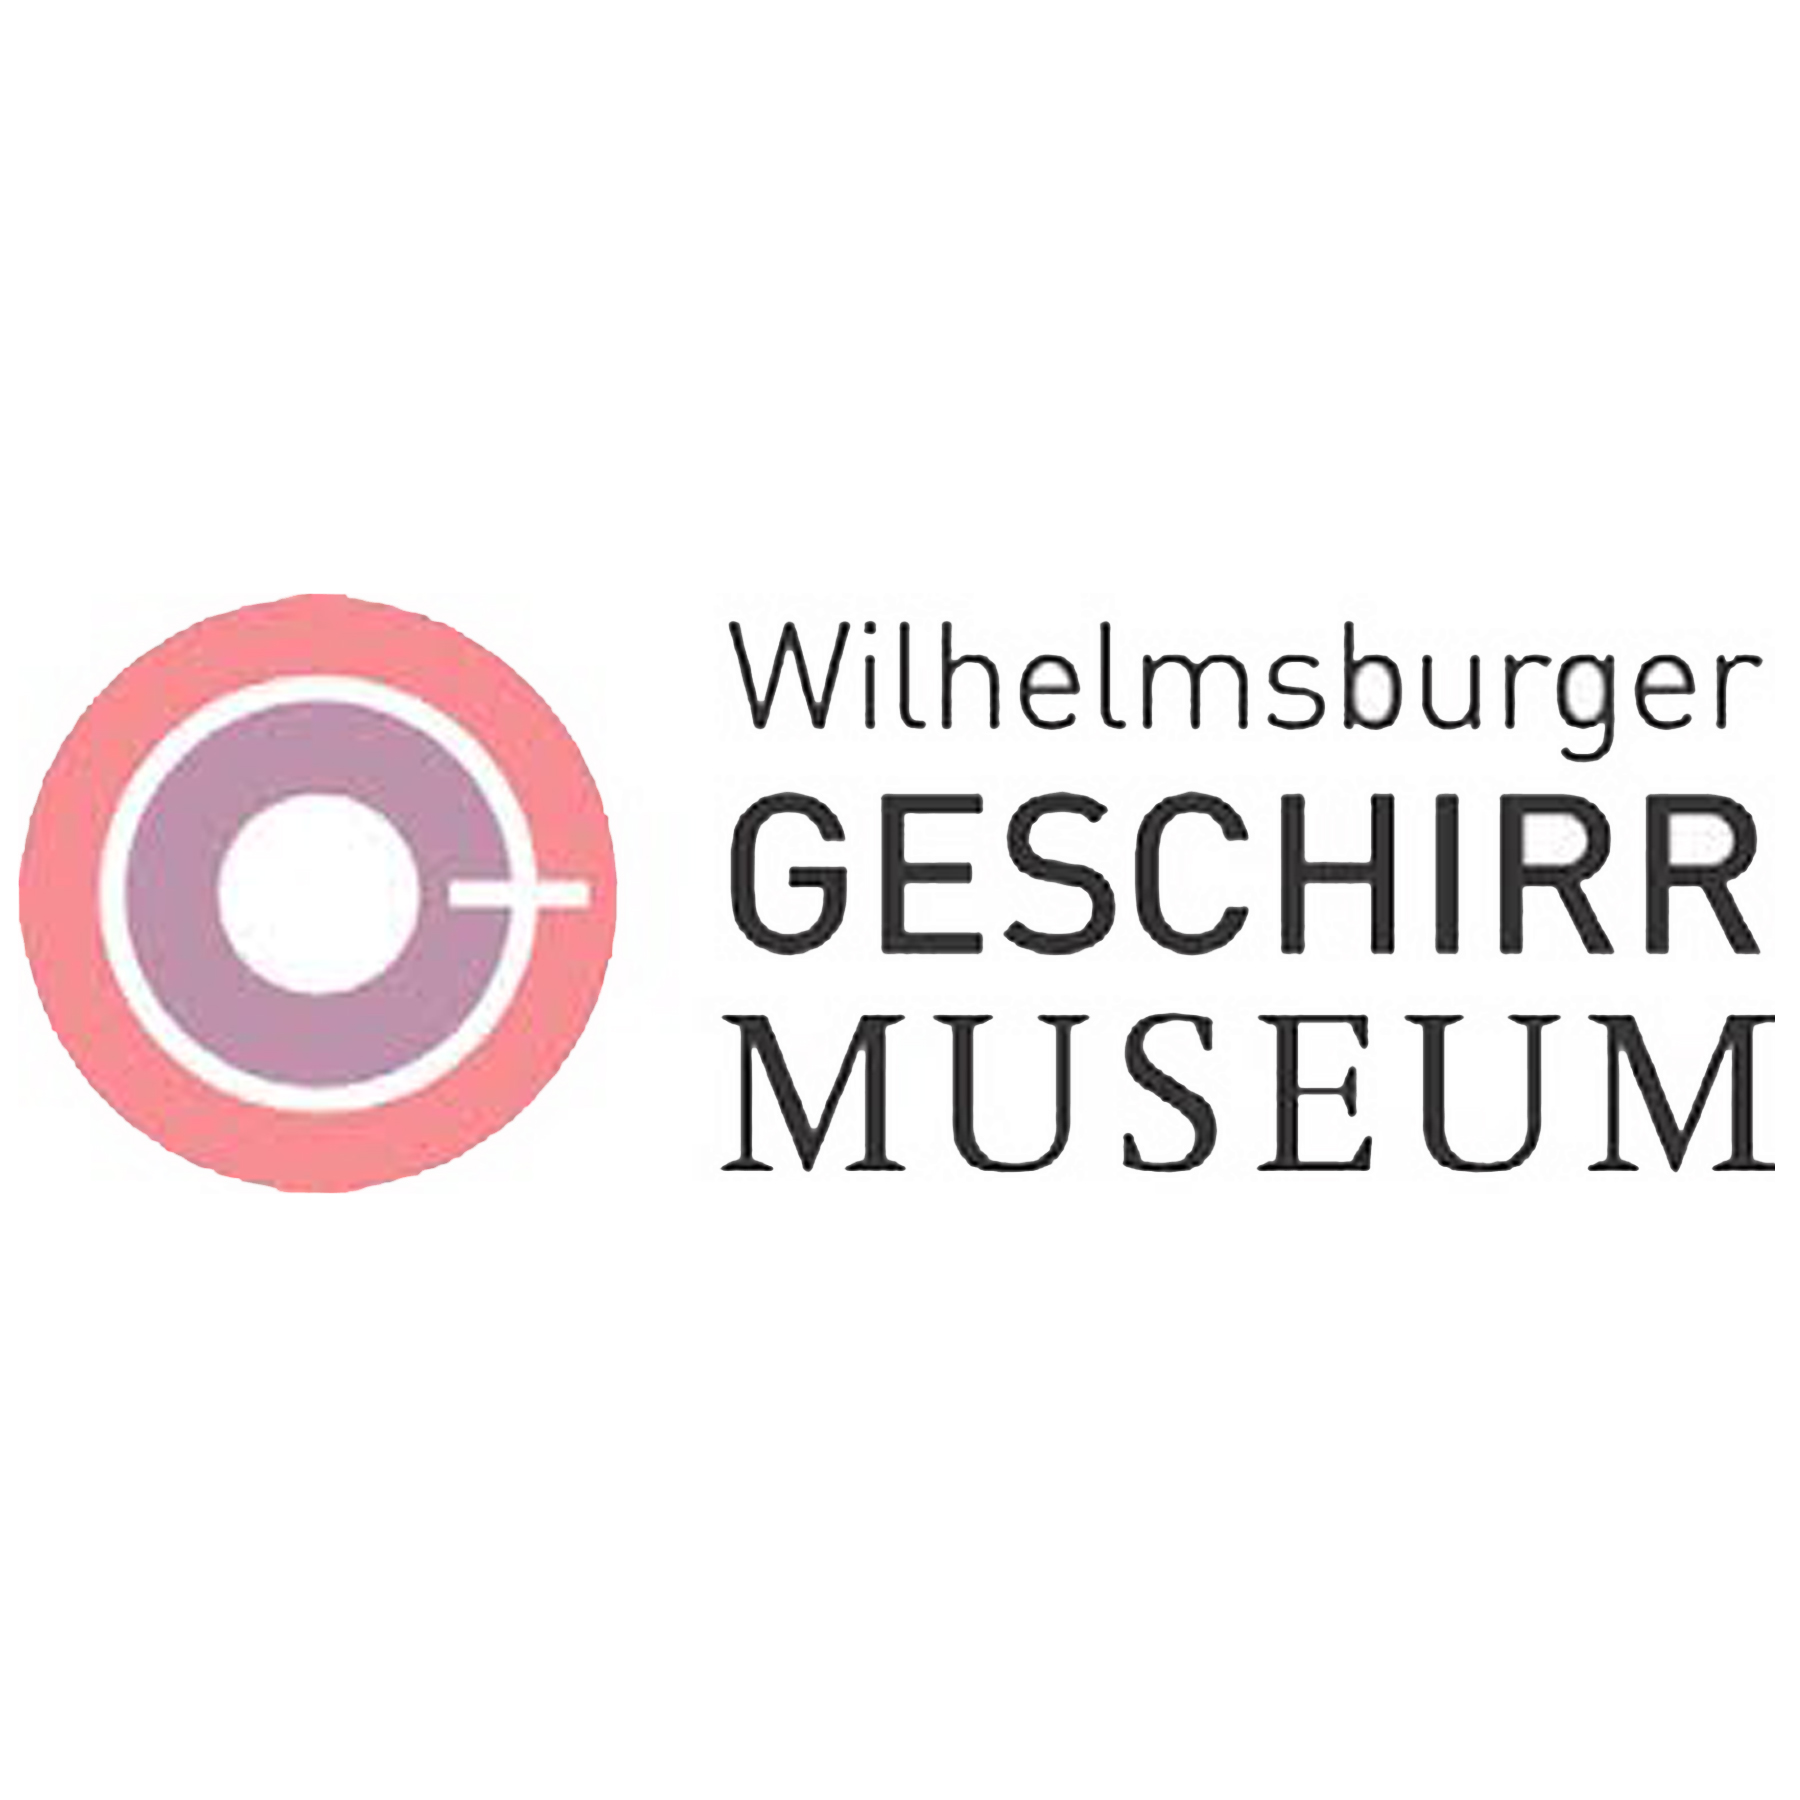 Wilhelmsburger Geschirrmuseum